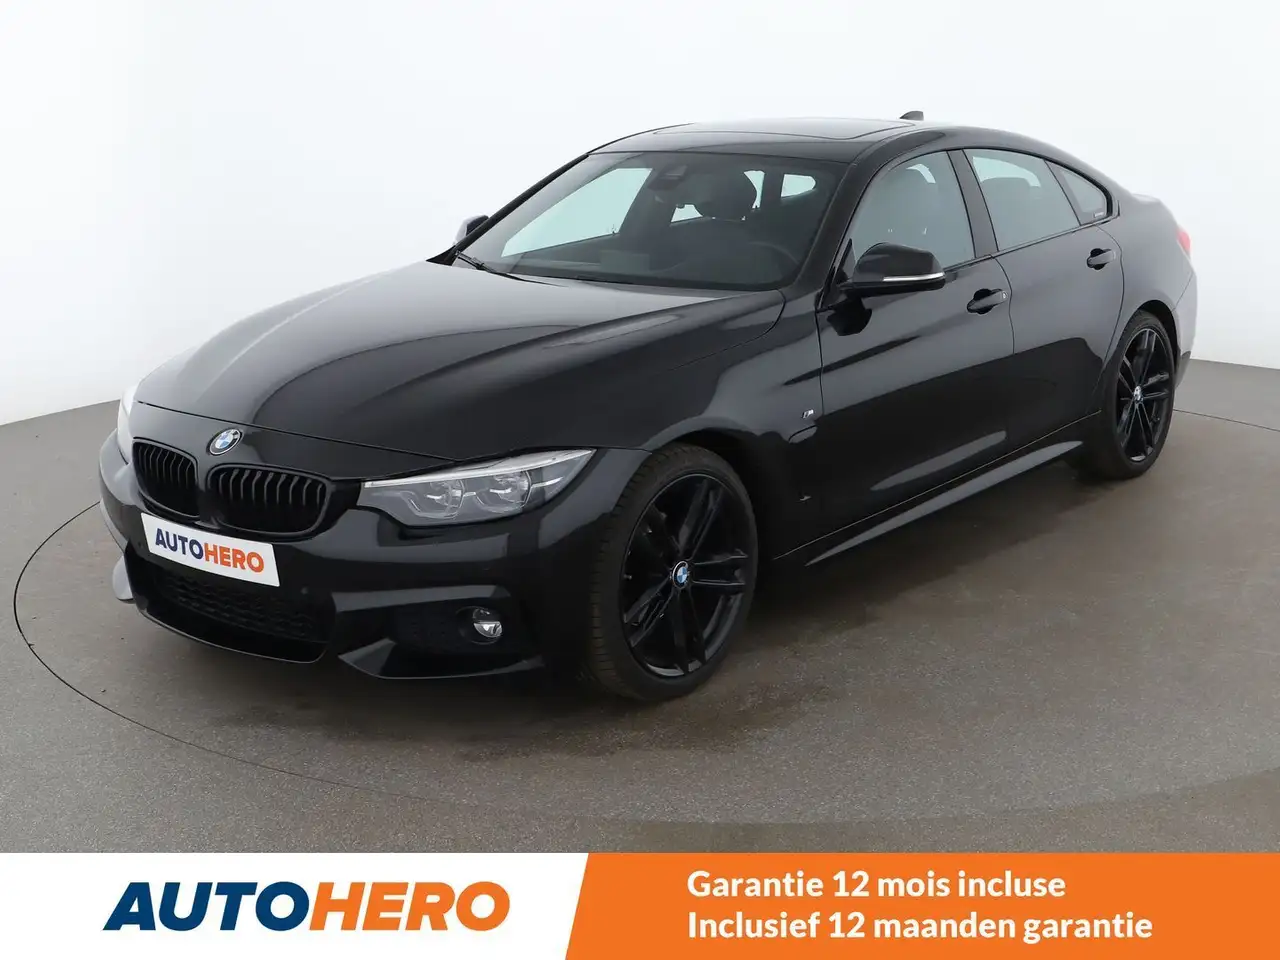 BMW 420 Coupé in Zwart tweedehands in Brussel voor € 26.099,-